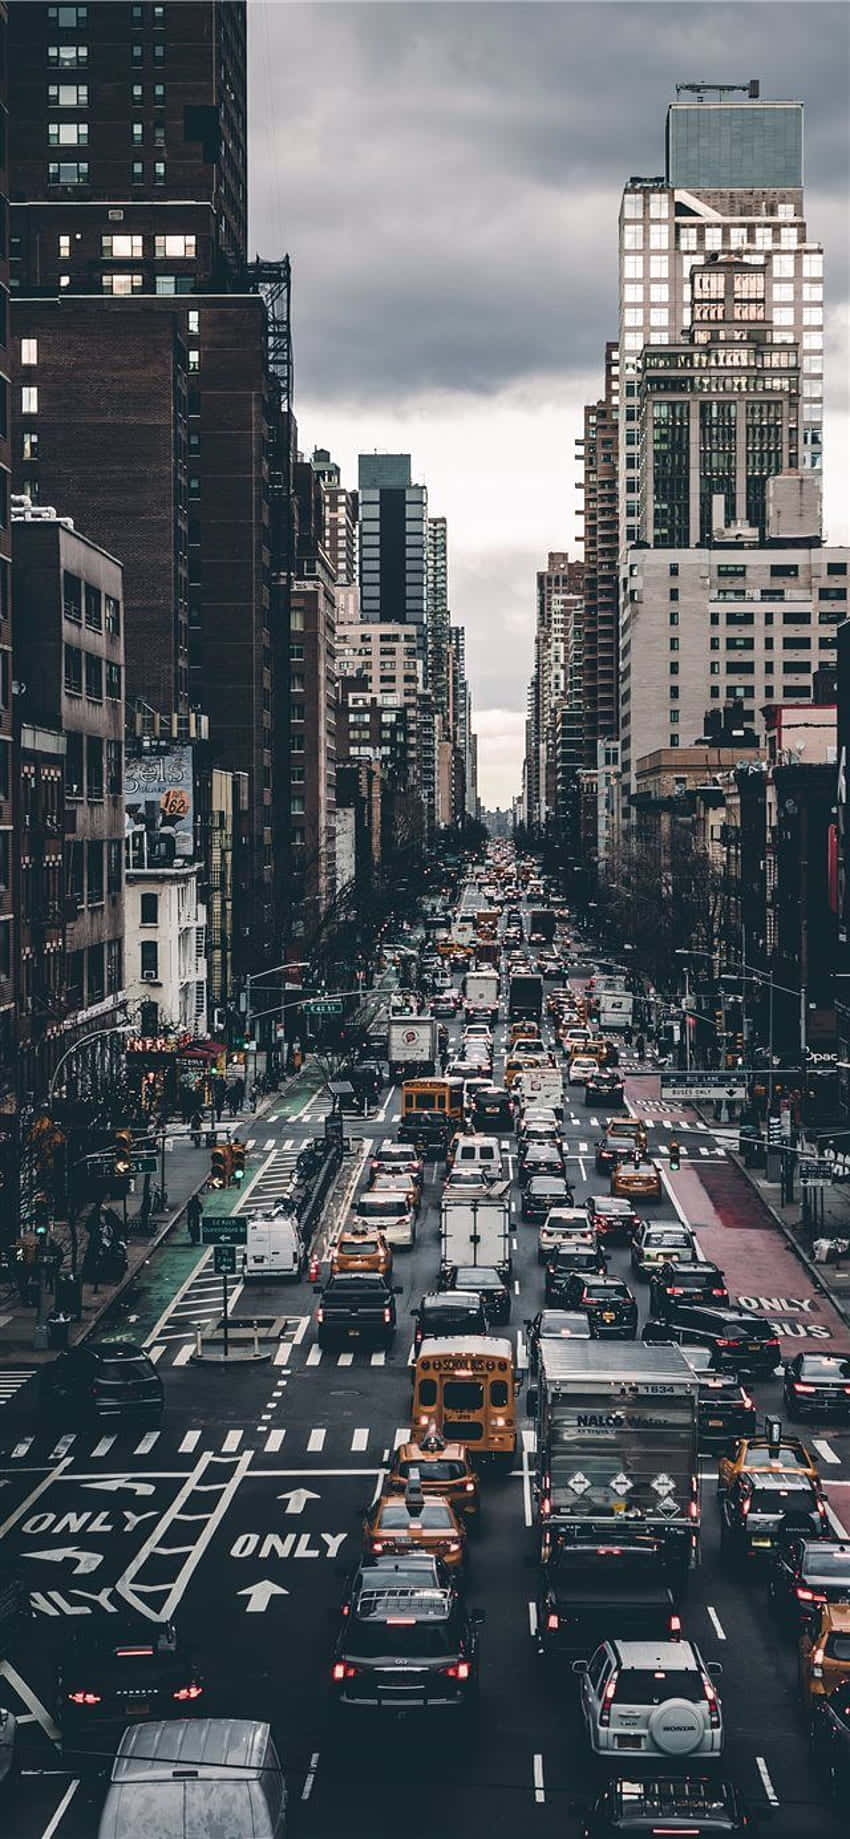 Fondode Pantalla De Viaje Para Android: Una Concurrida Calle De La Ciudad De Nueva York.